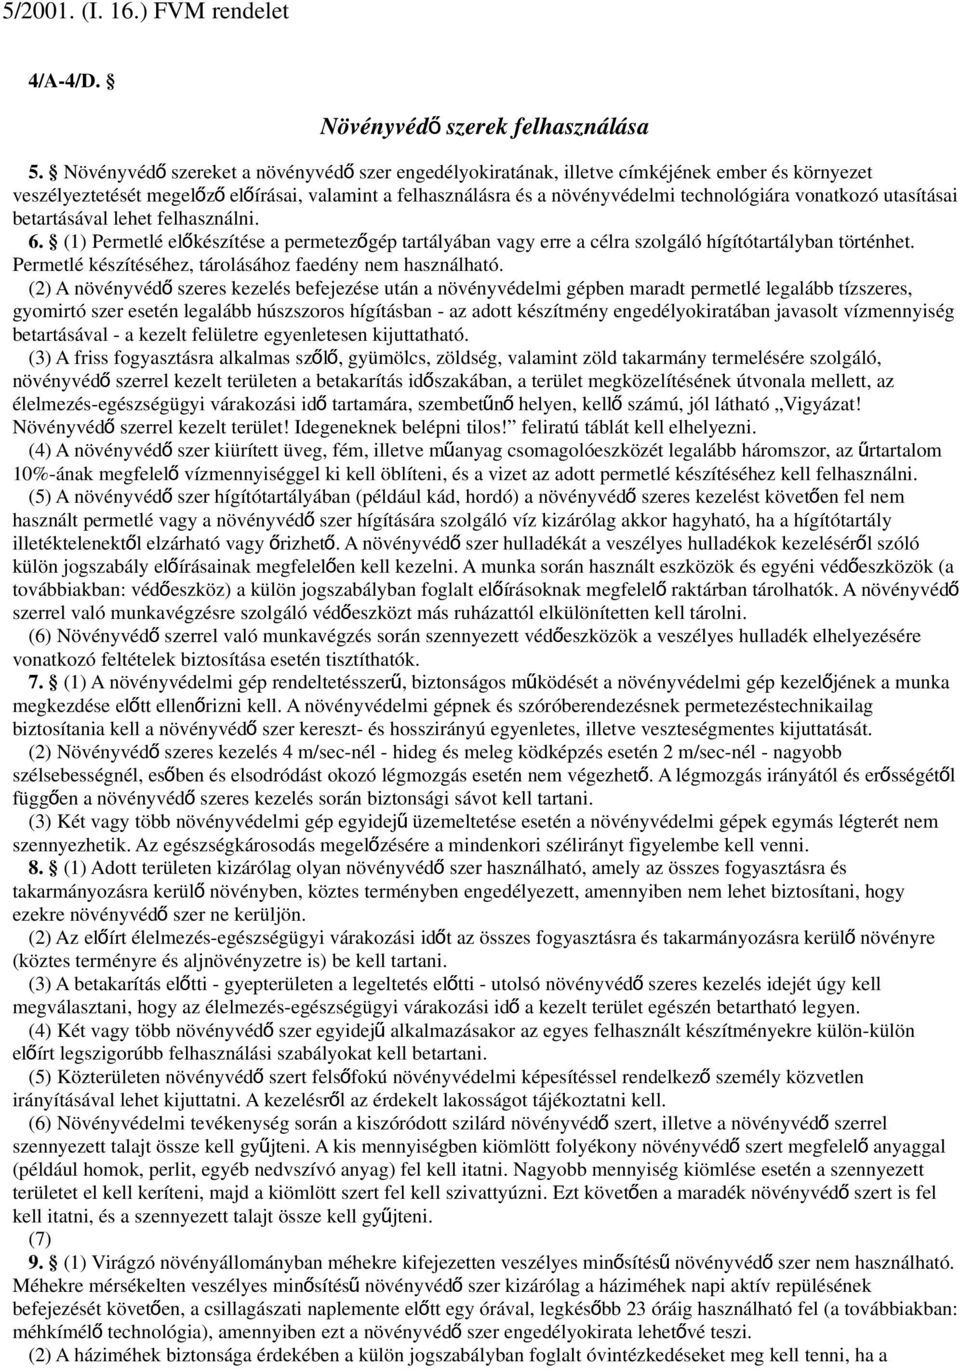 5/2001. (I. 16.) FVM rendelet - PDF Ingyenes letöltés